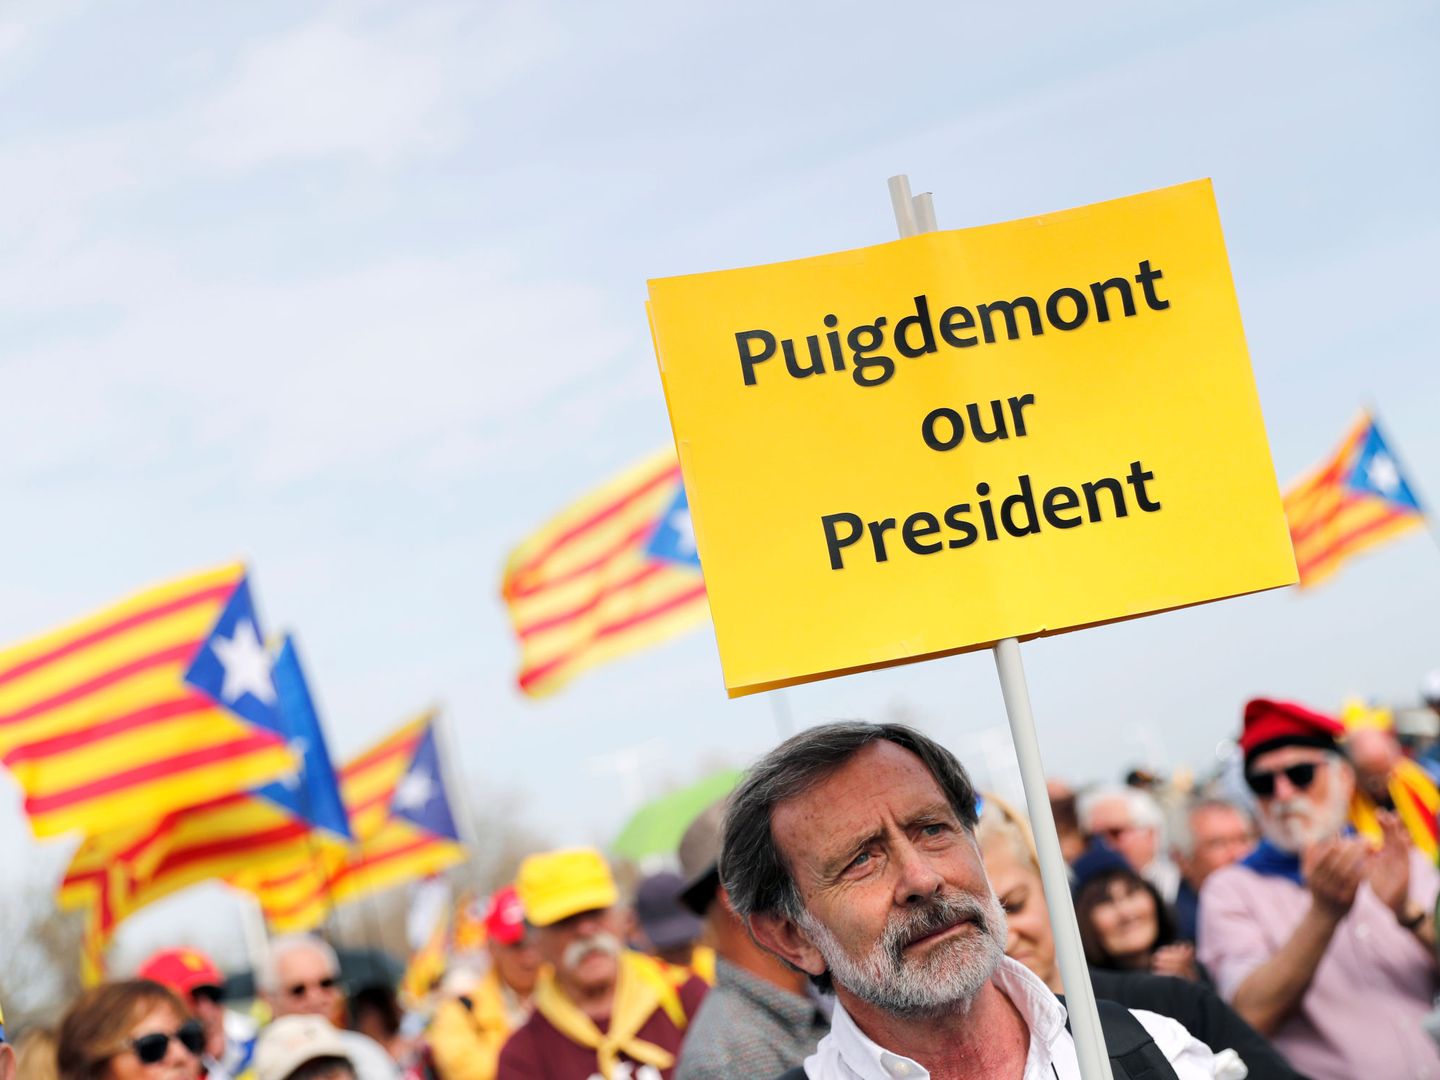 Un manifestante sostiene un cartel en favor de Puigdemont durante un acto en Perpignan. (Reuters)